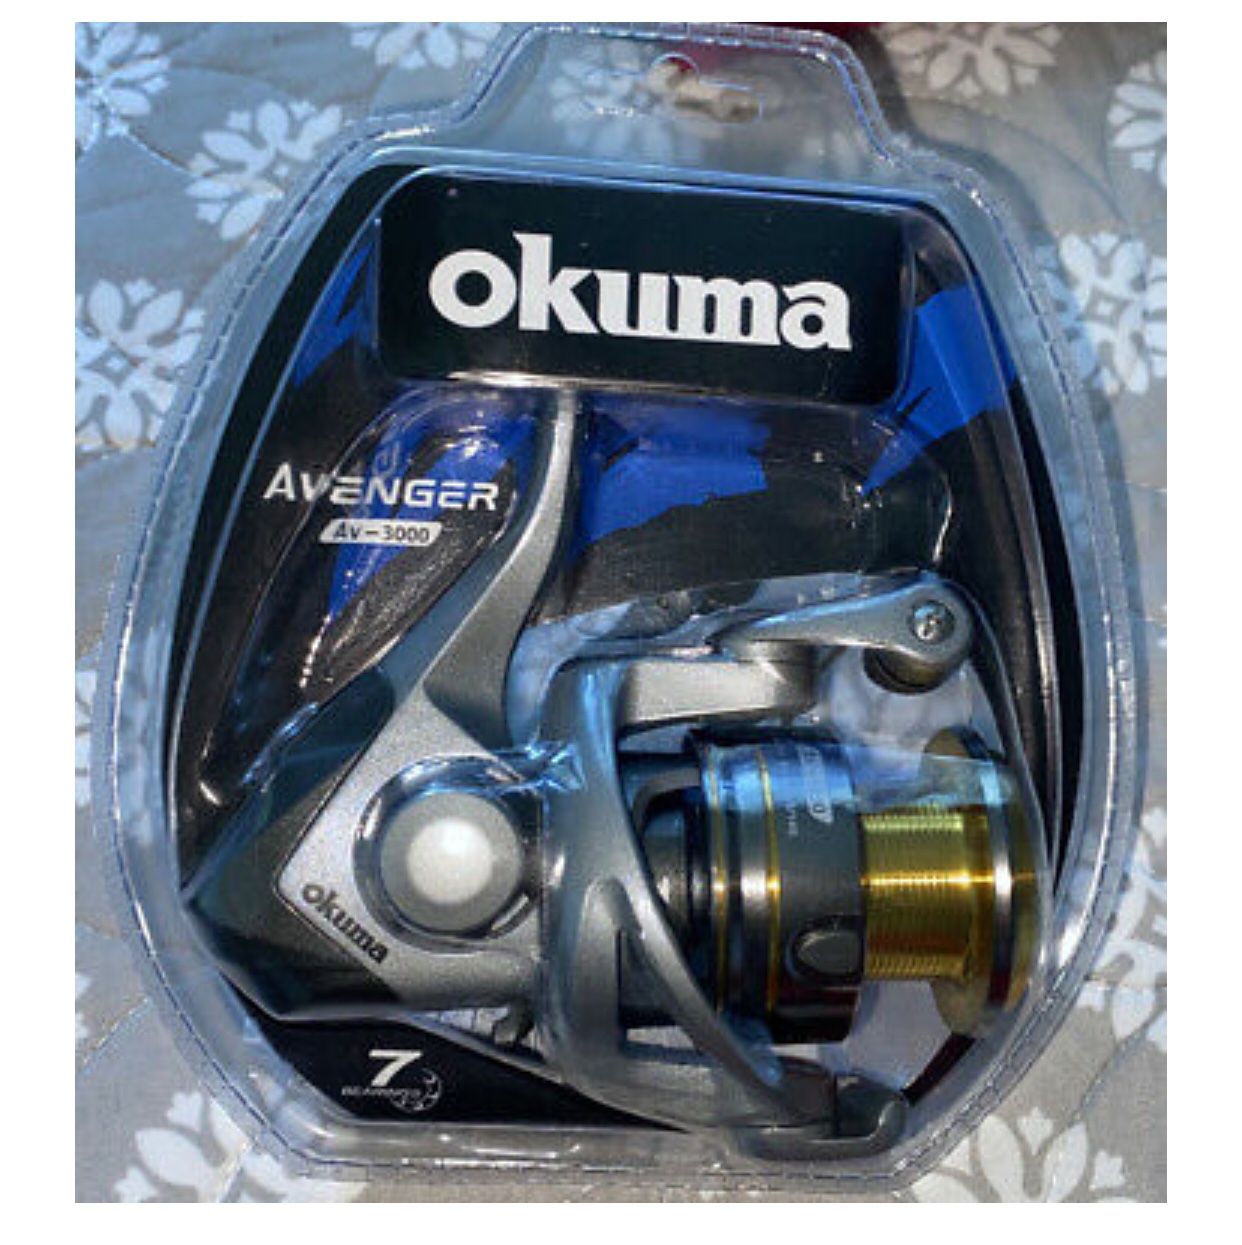 Okuma Fishing Tackle Avenger Spinning Reel Avenger AV-3000 *new*